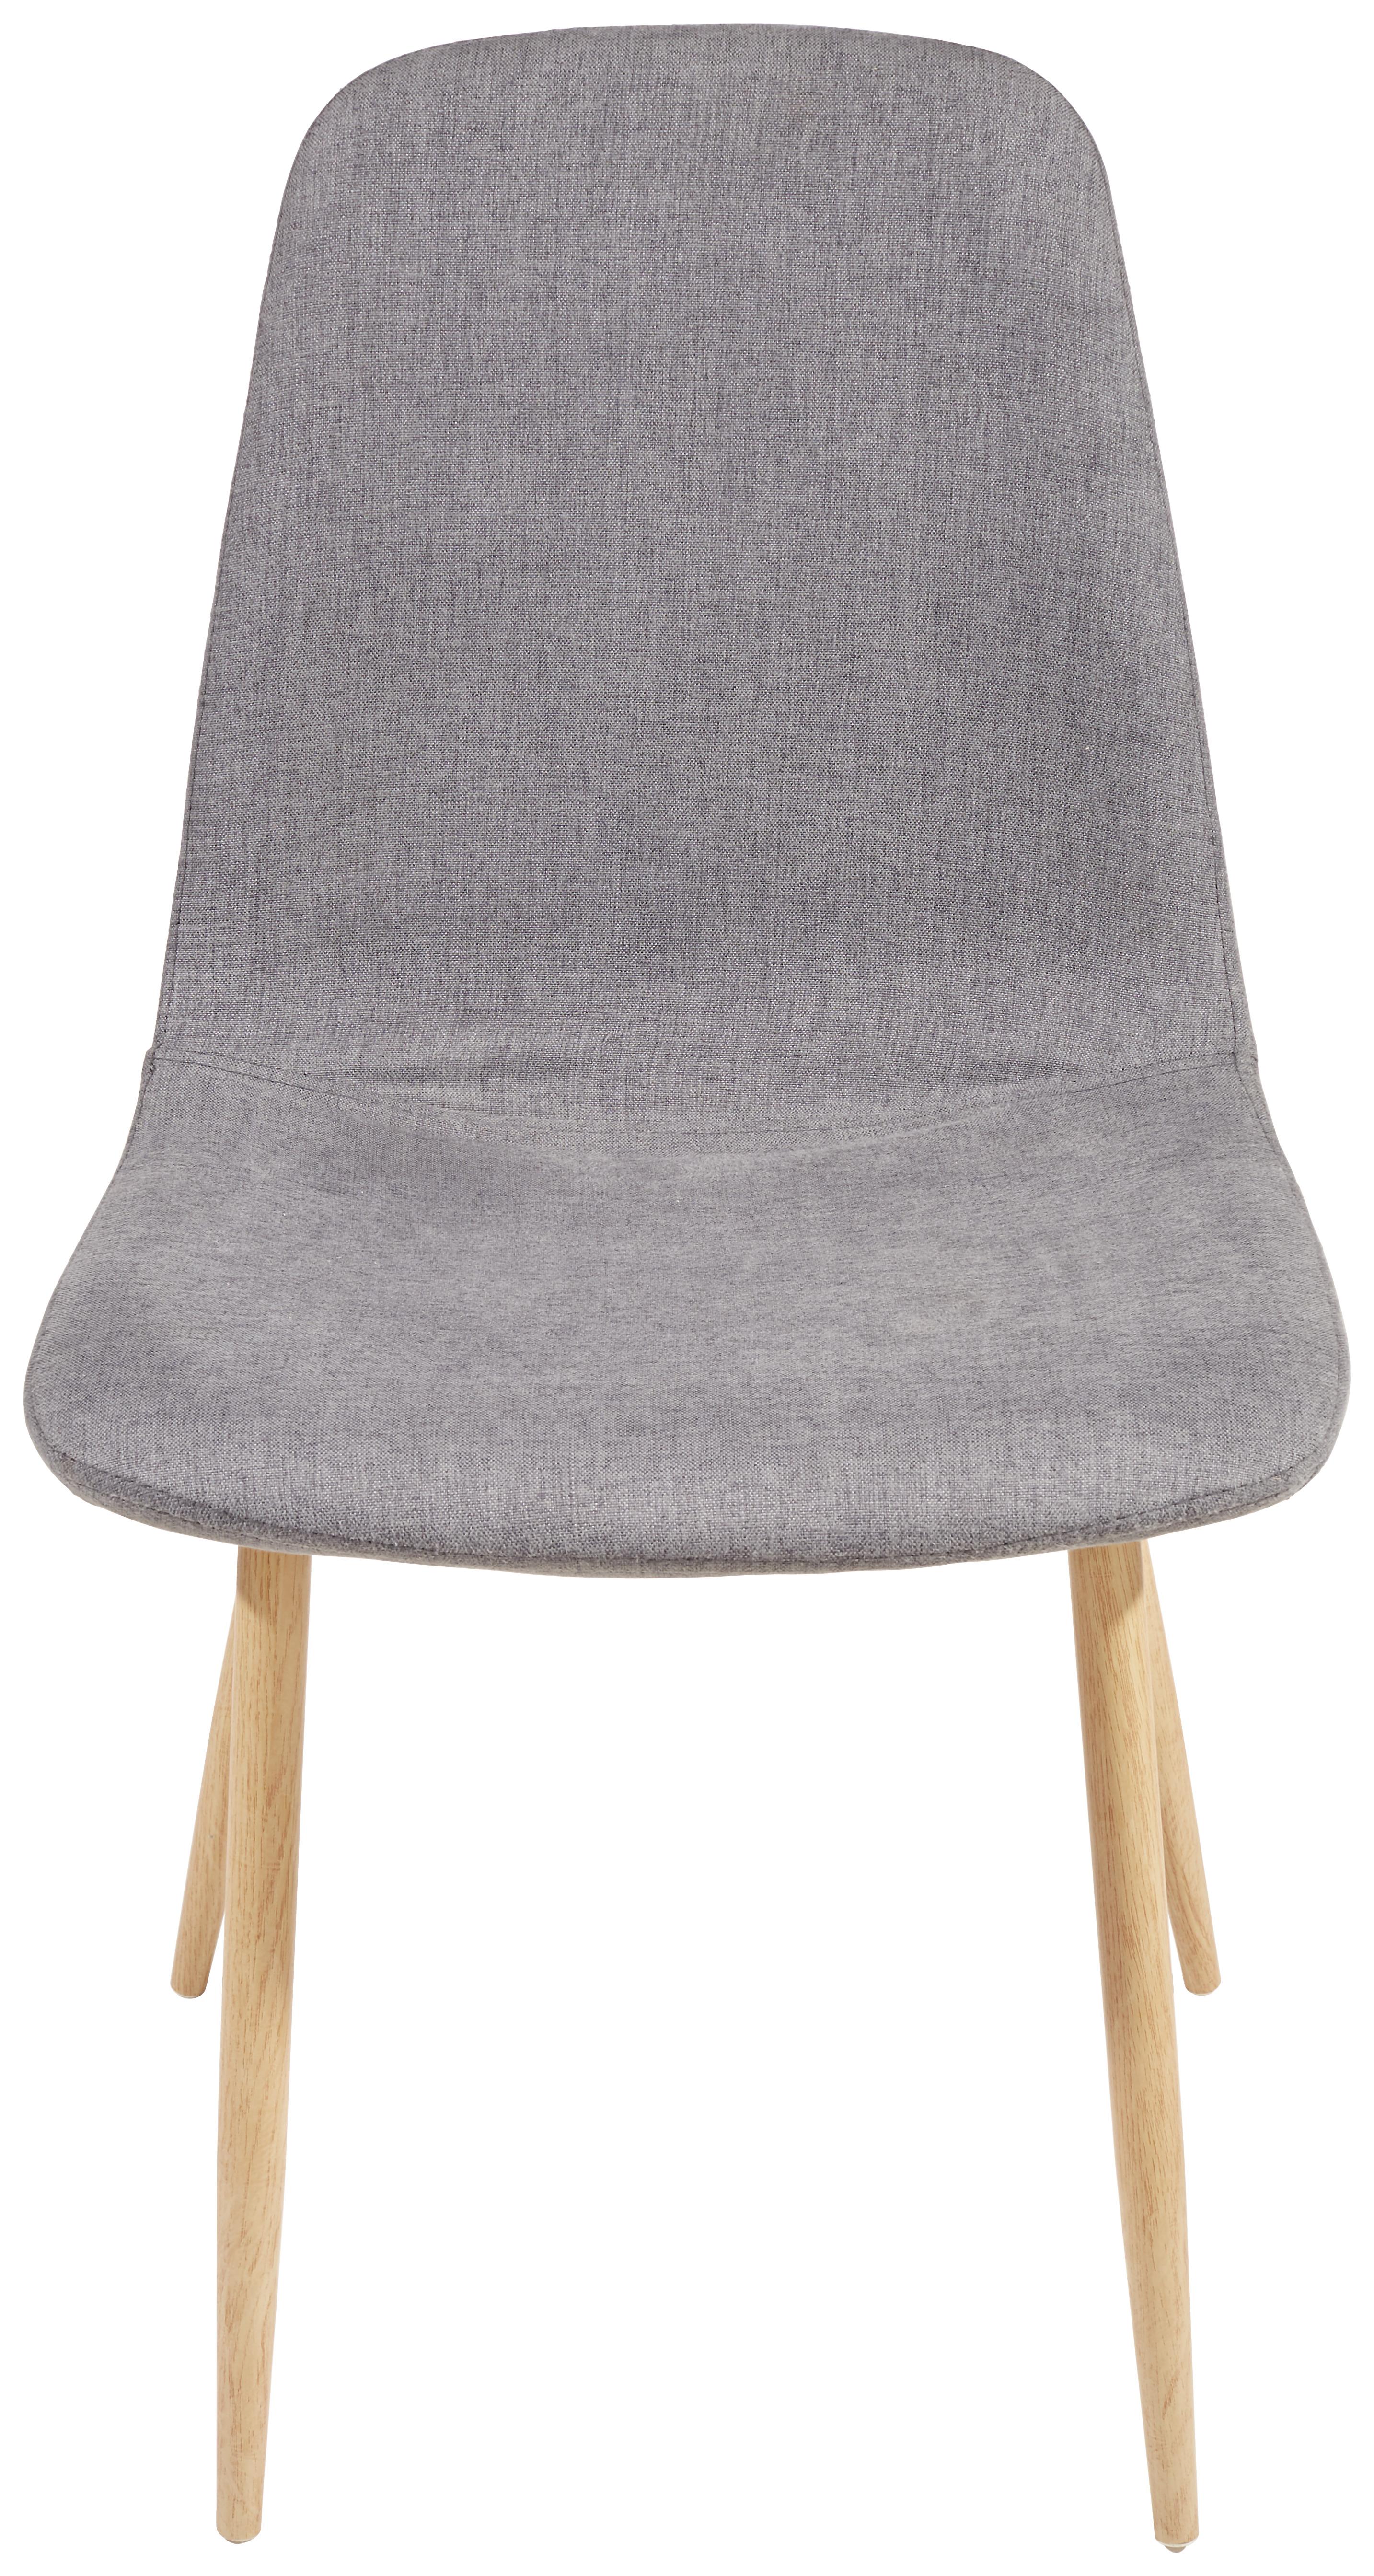 Židle Svenja I - šedá/barvy dubu, Moderní, kov/textil (45,5/86,5/53cm)